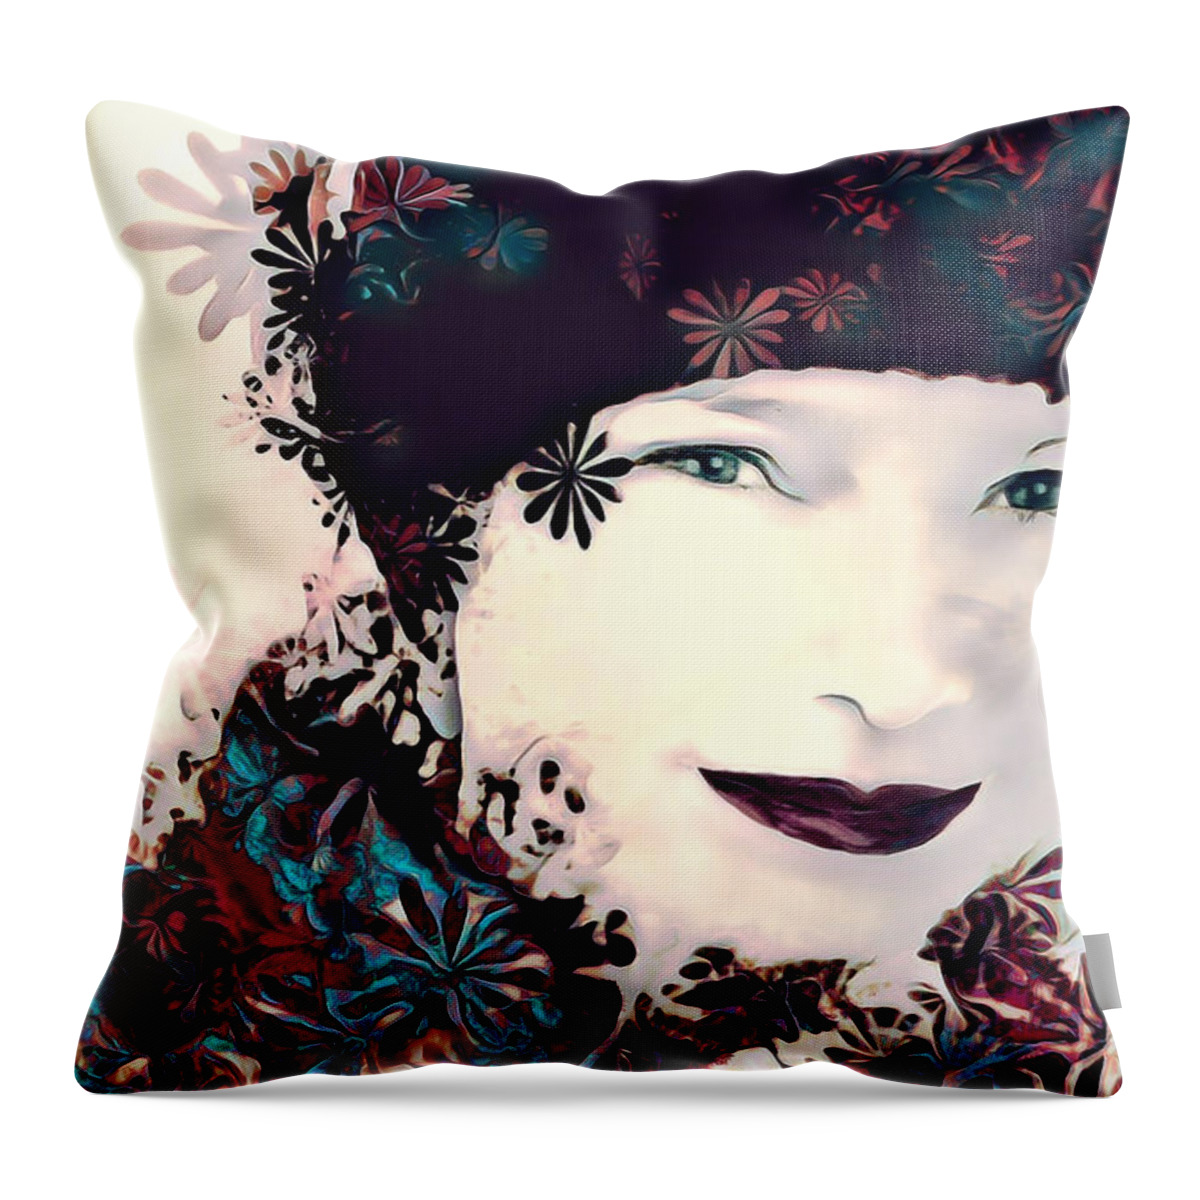 Flower Throw Pillow featuring the digital art Flower Girl #1 by Pennie McCracken